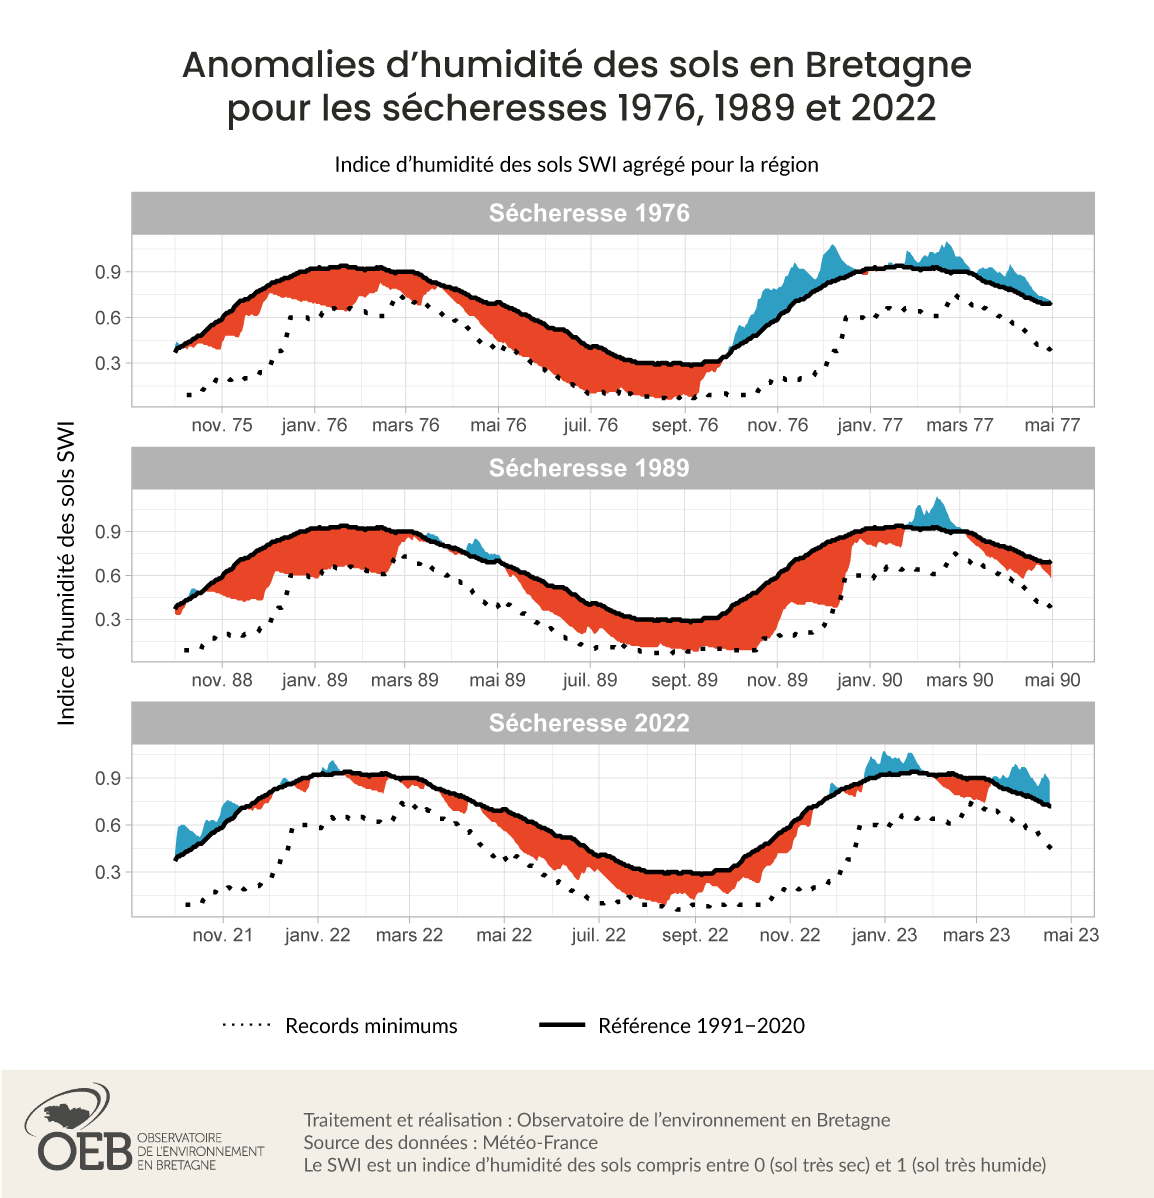 Anomalie d'humidité des sols en Bretagne pour les sécheresses 1976, 1989 et 2022